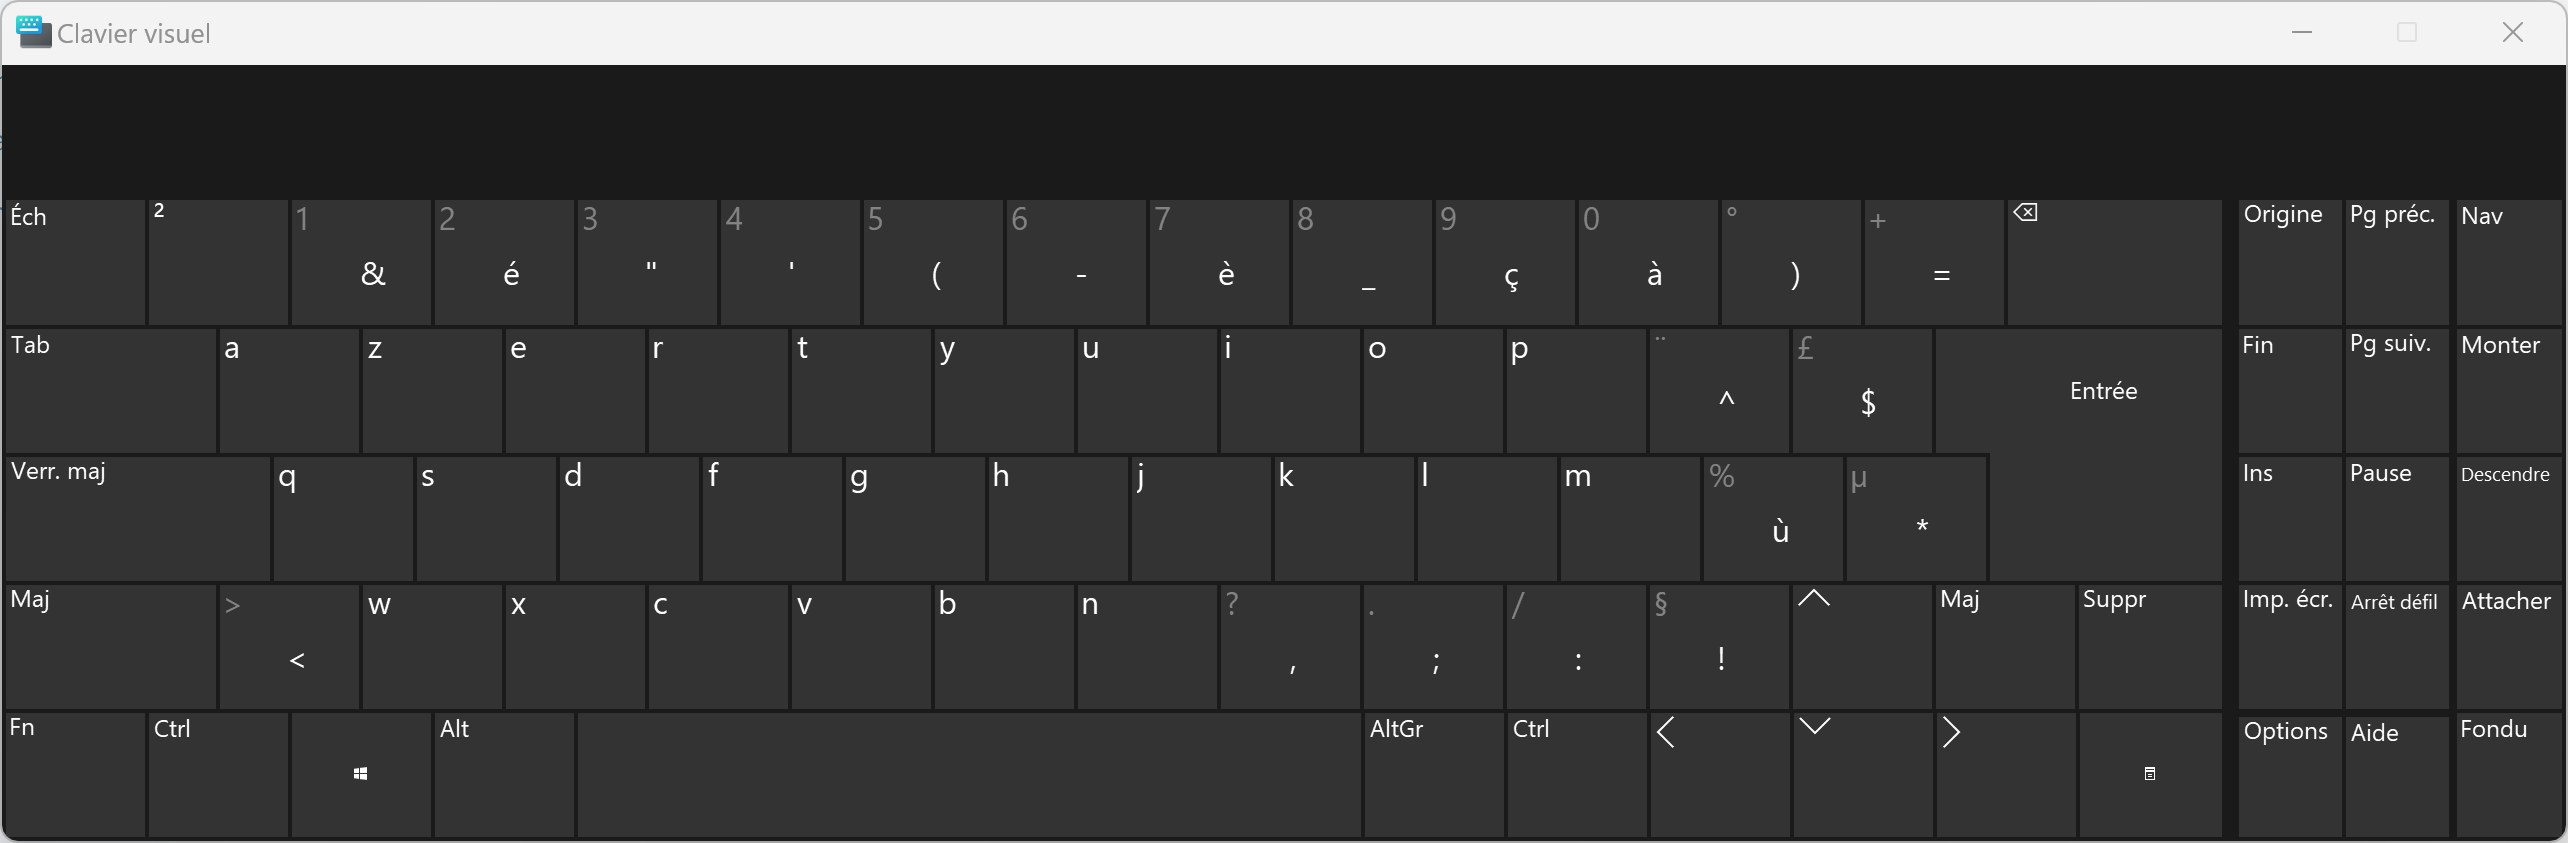 clavier virtuel de Windows... Pardon je sais pas réduire la taille d'une image avec MarkDown :'( 